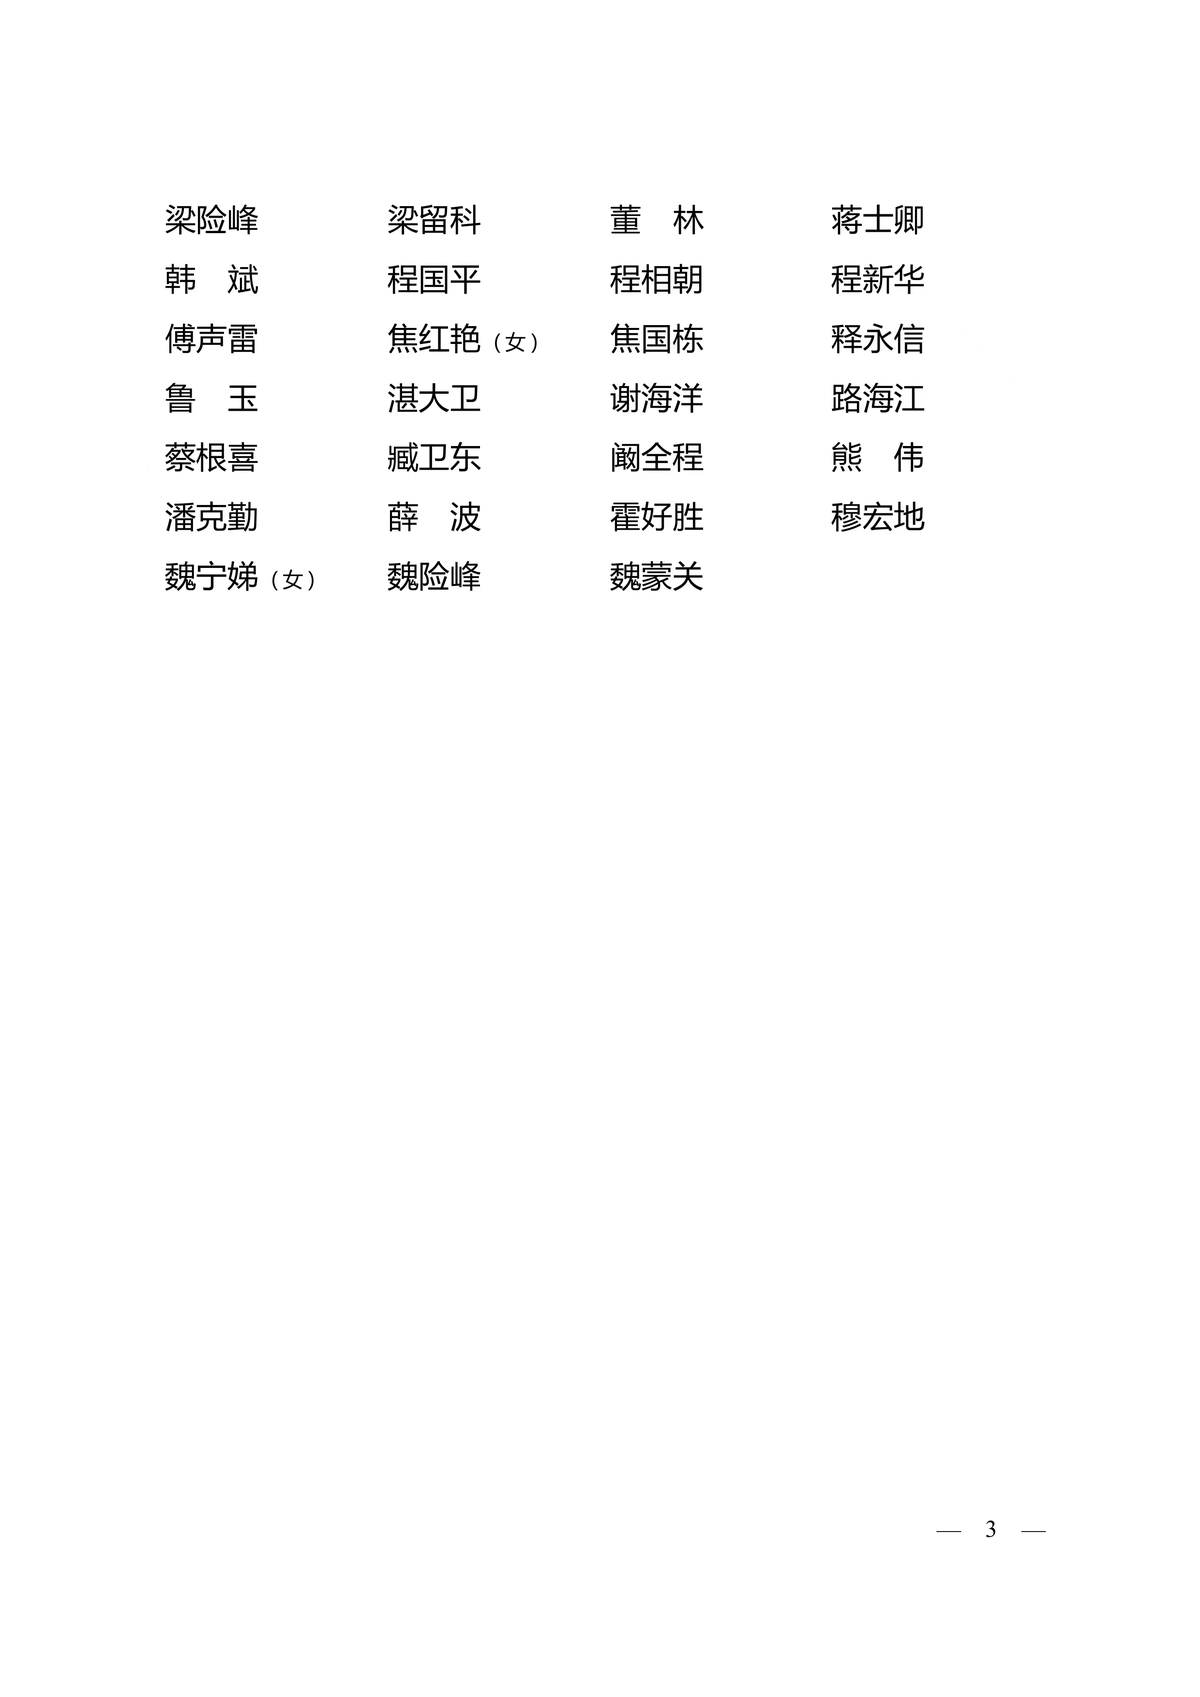 中国人民政治协商会议第十三届河南省委员会常务委员名单